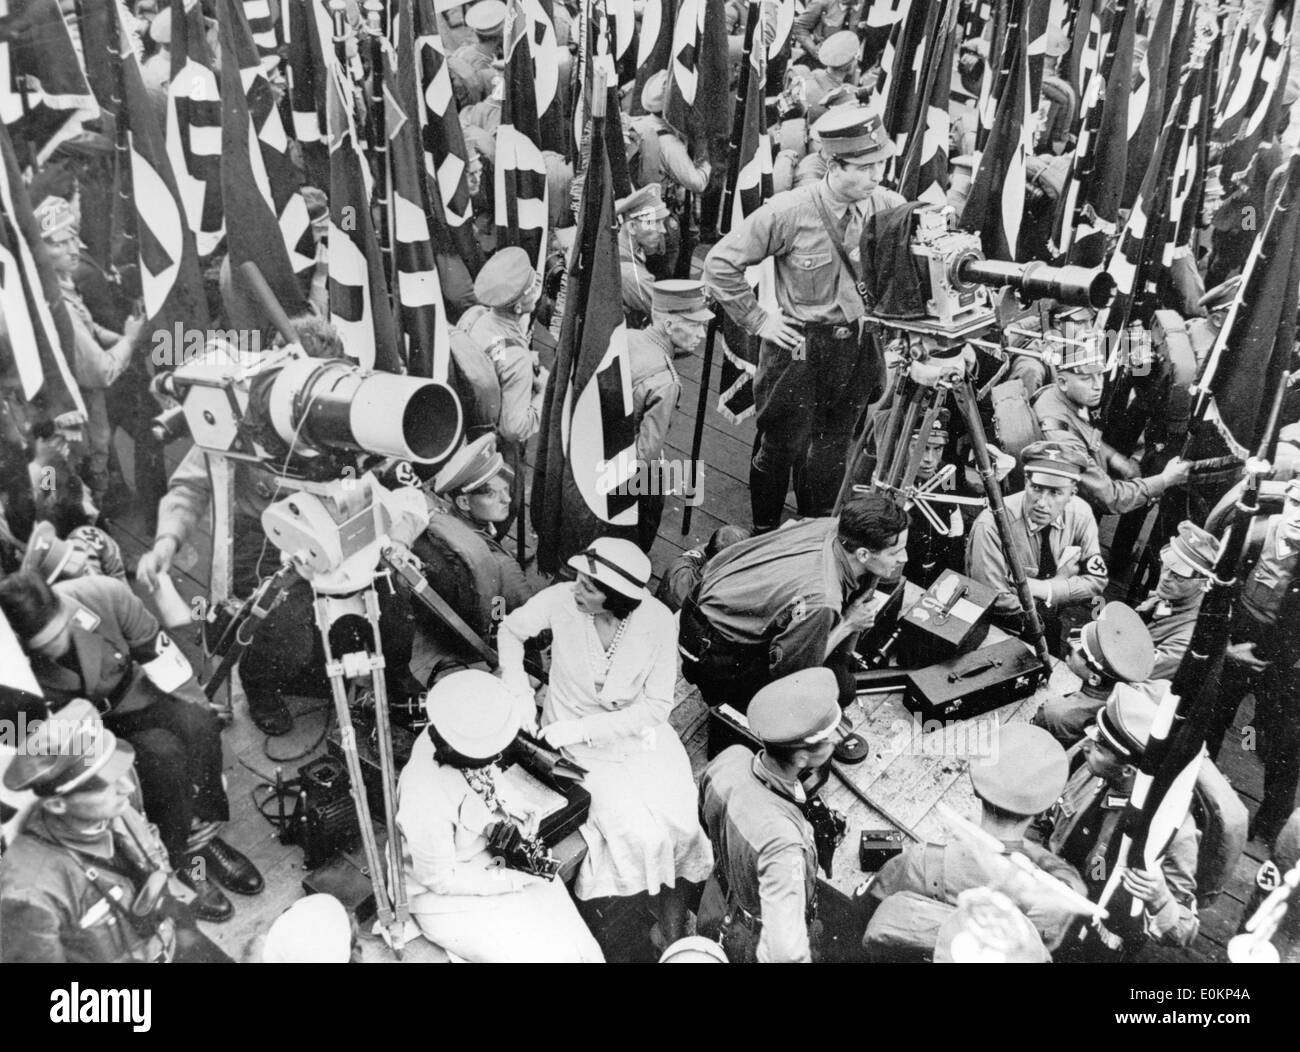 Leni Riefenstahl directing the Nazi Propaganda film Triumph of the Will Stock Photo